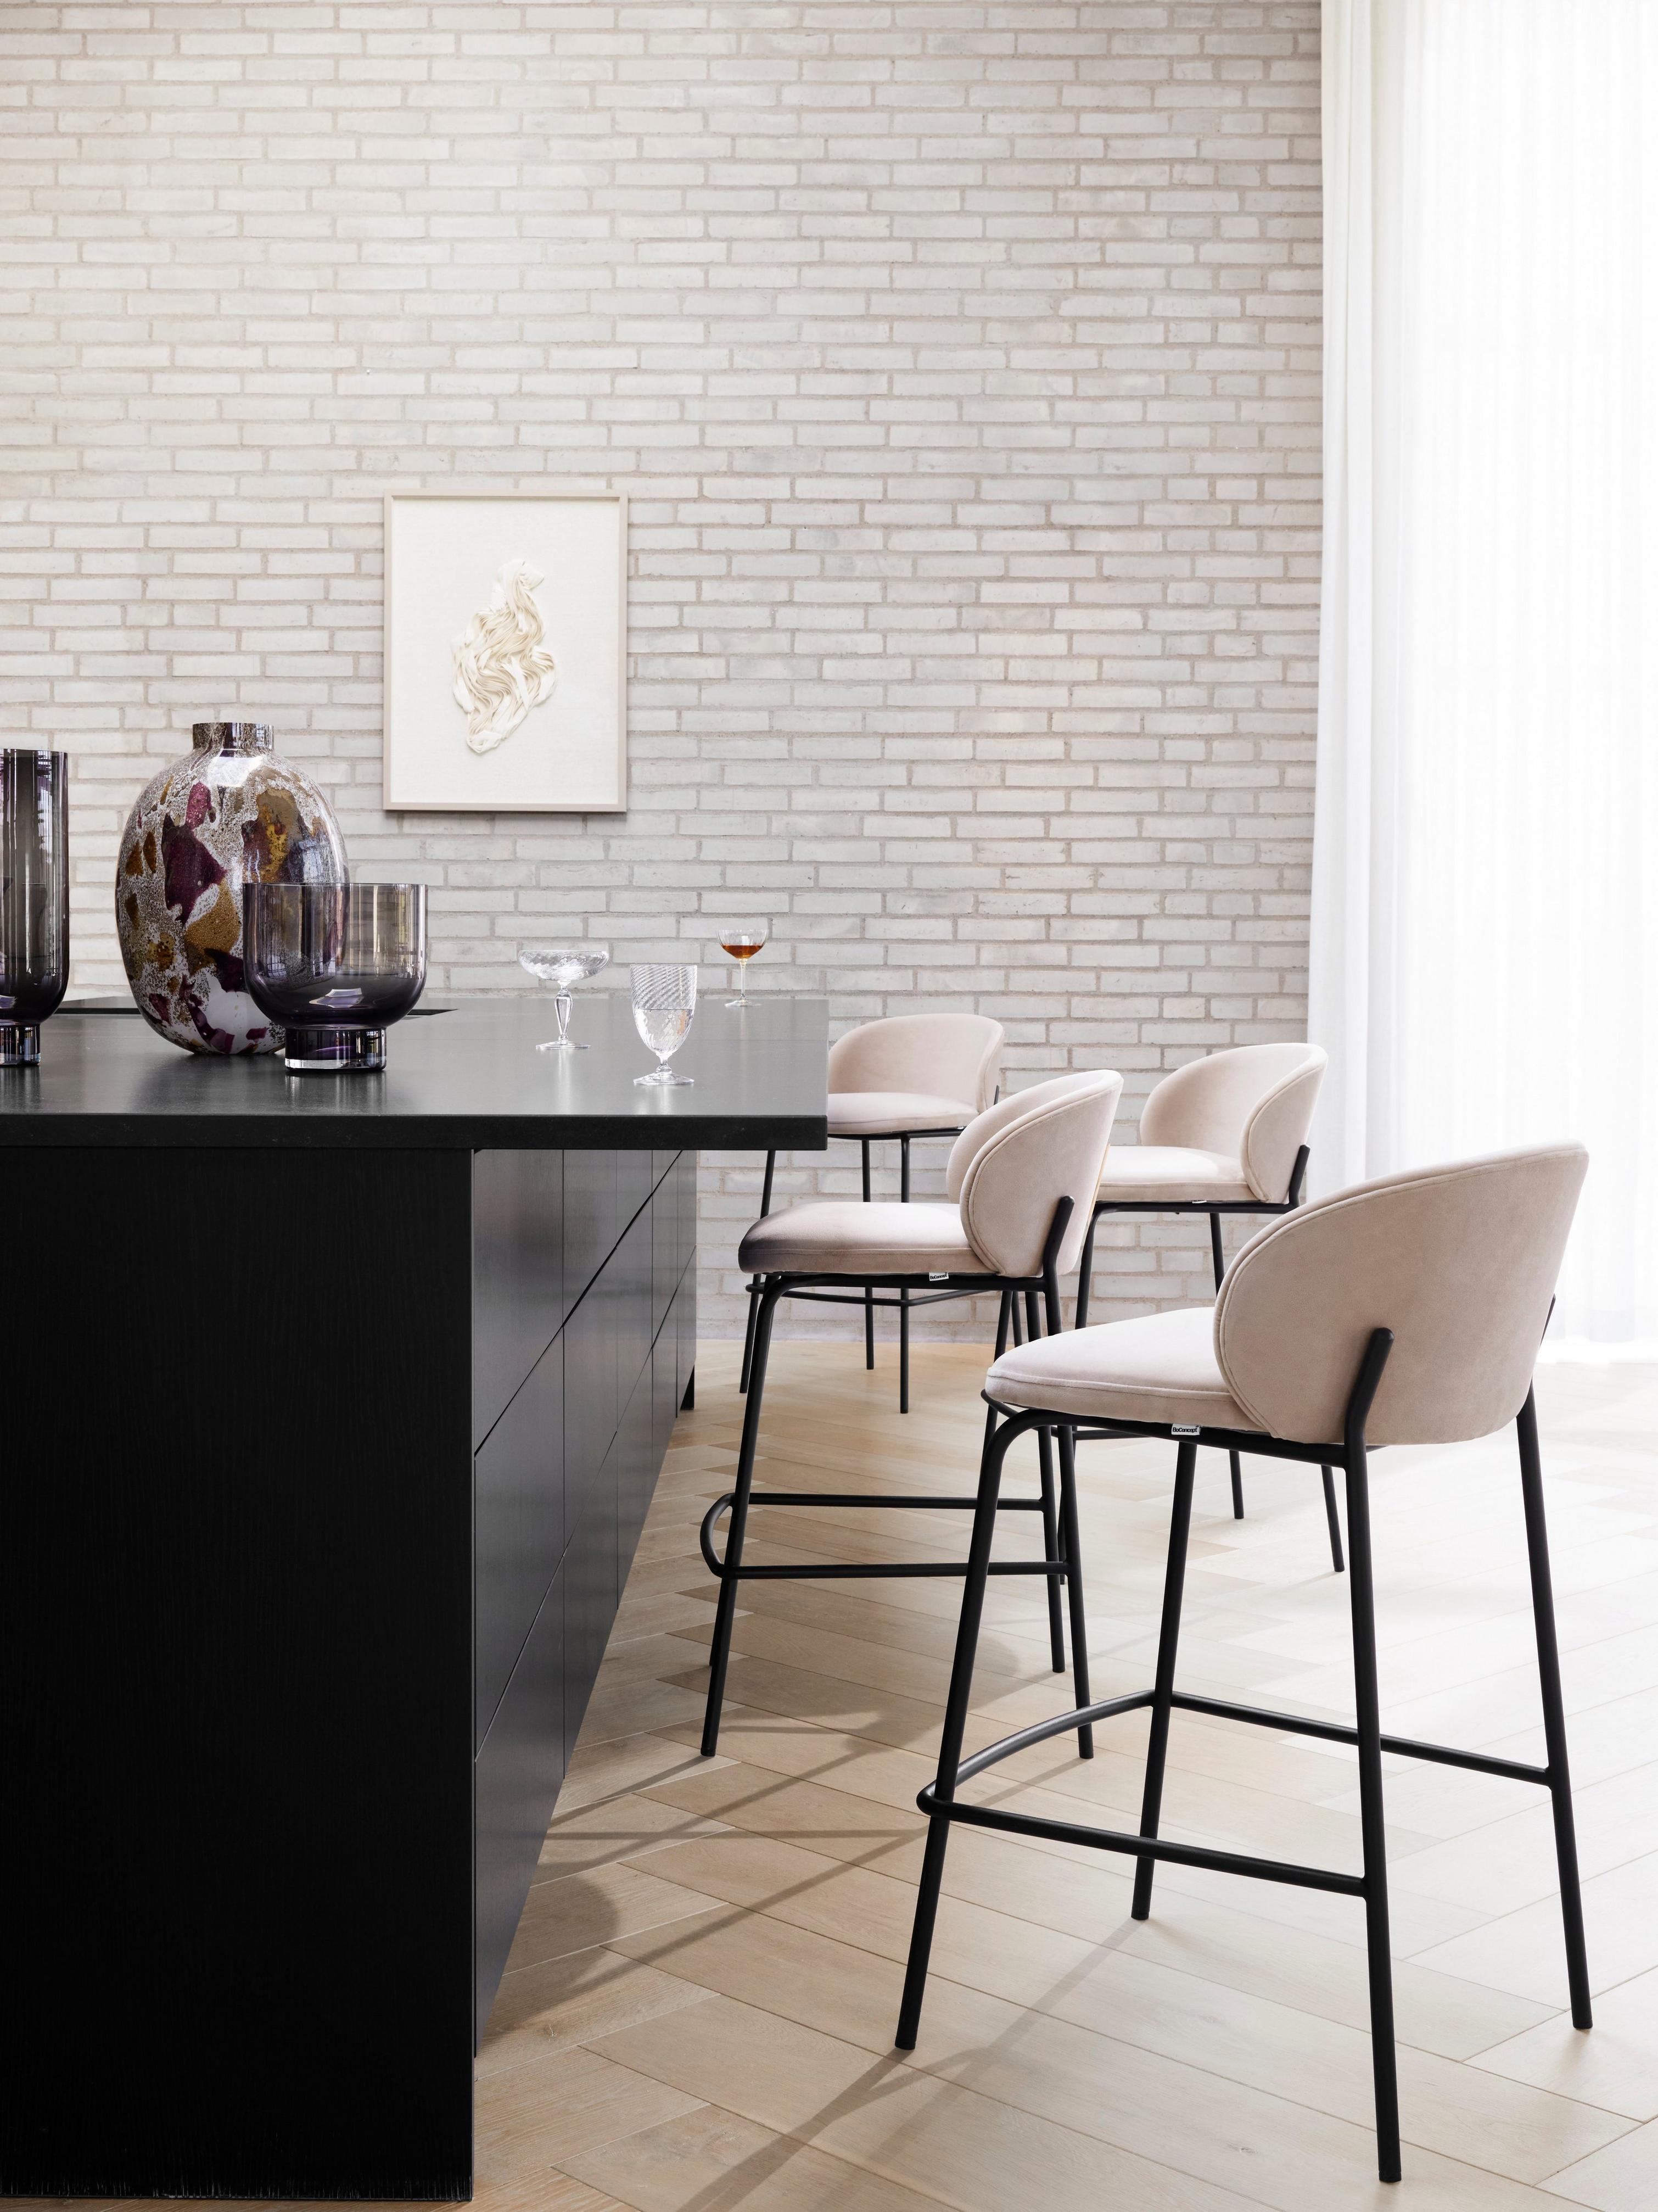 デザイナーバースツール | デンマークデザインの家具 | ボーコンセプト